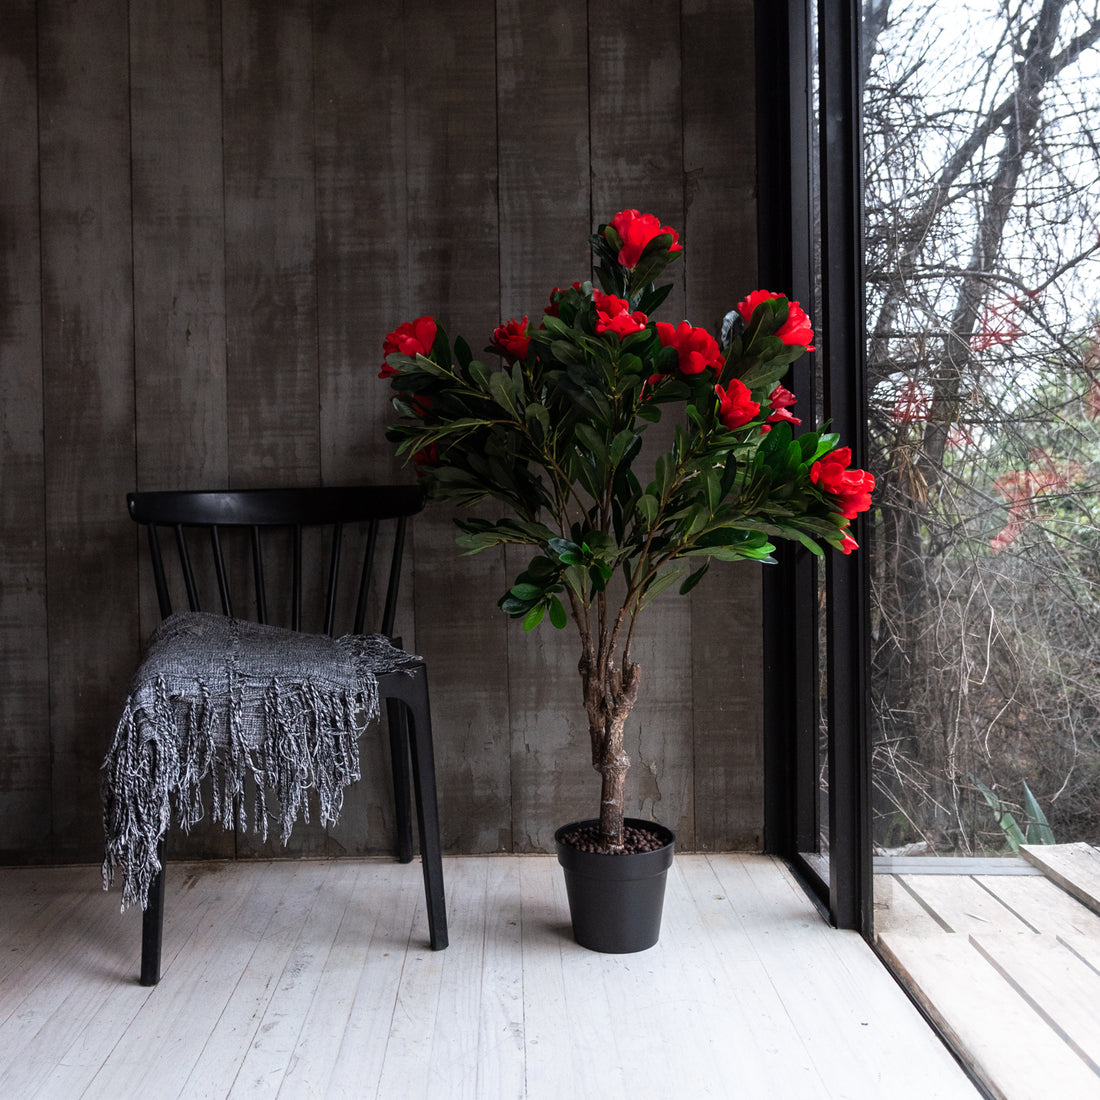 Árbol de Rododendro Rojo Artificial de 120 cm